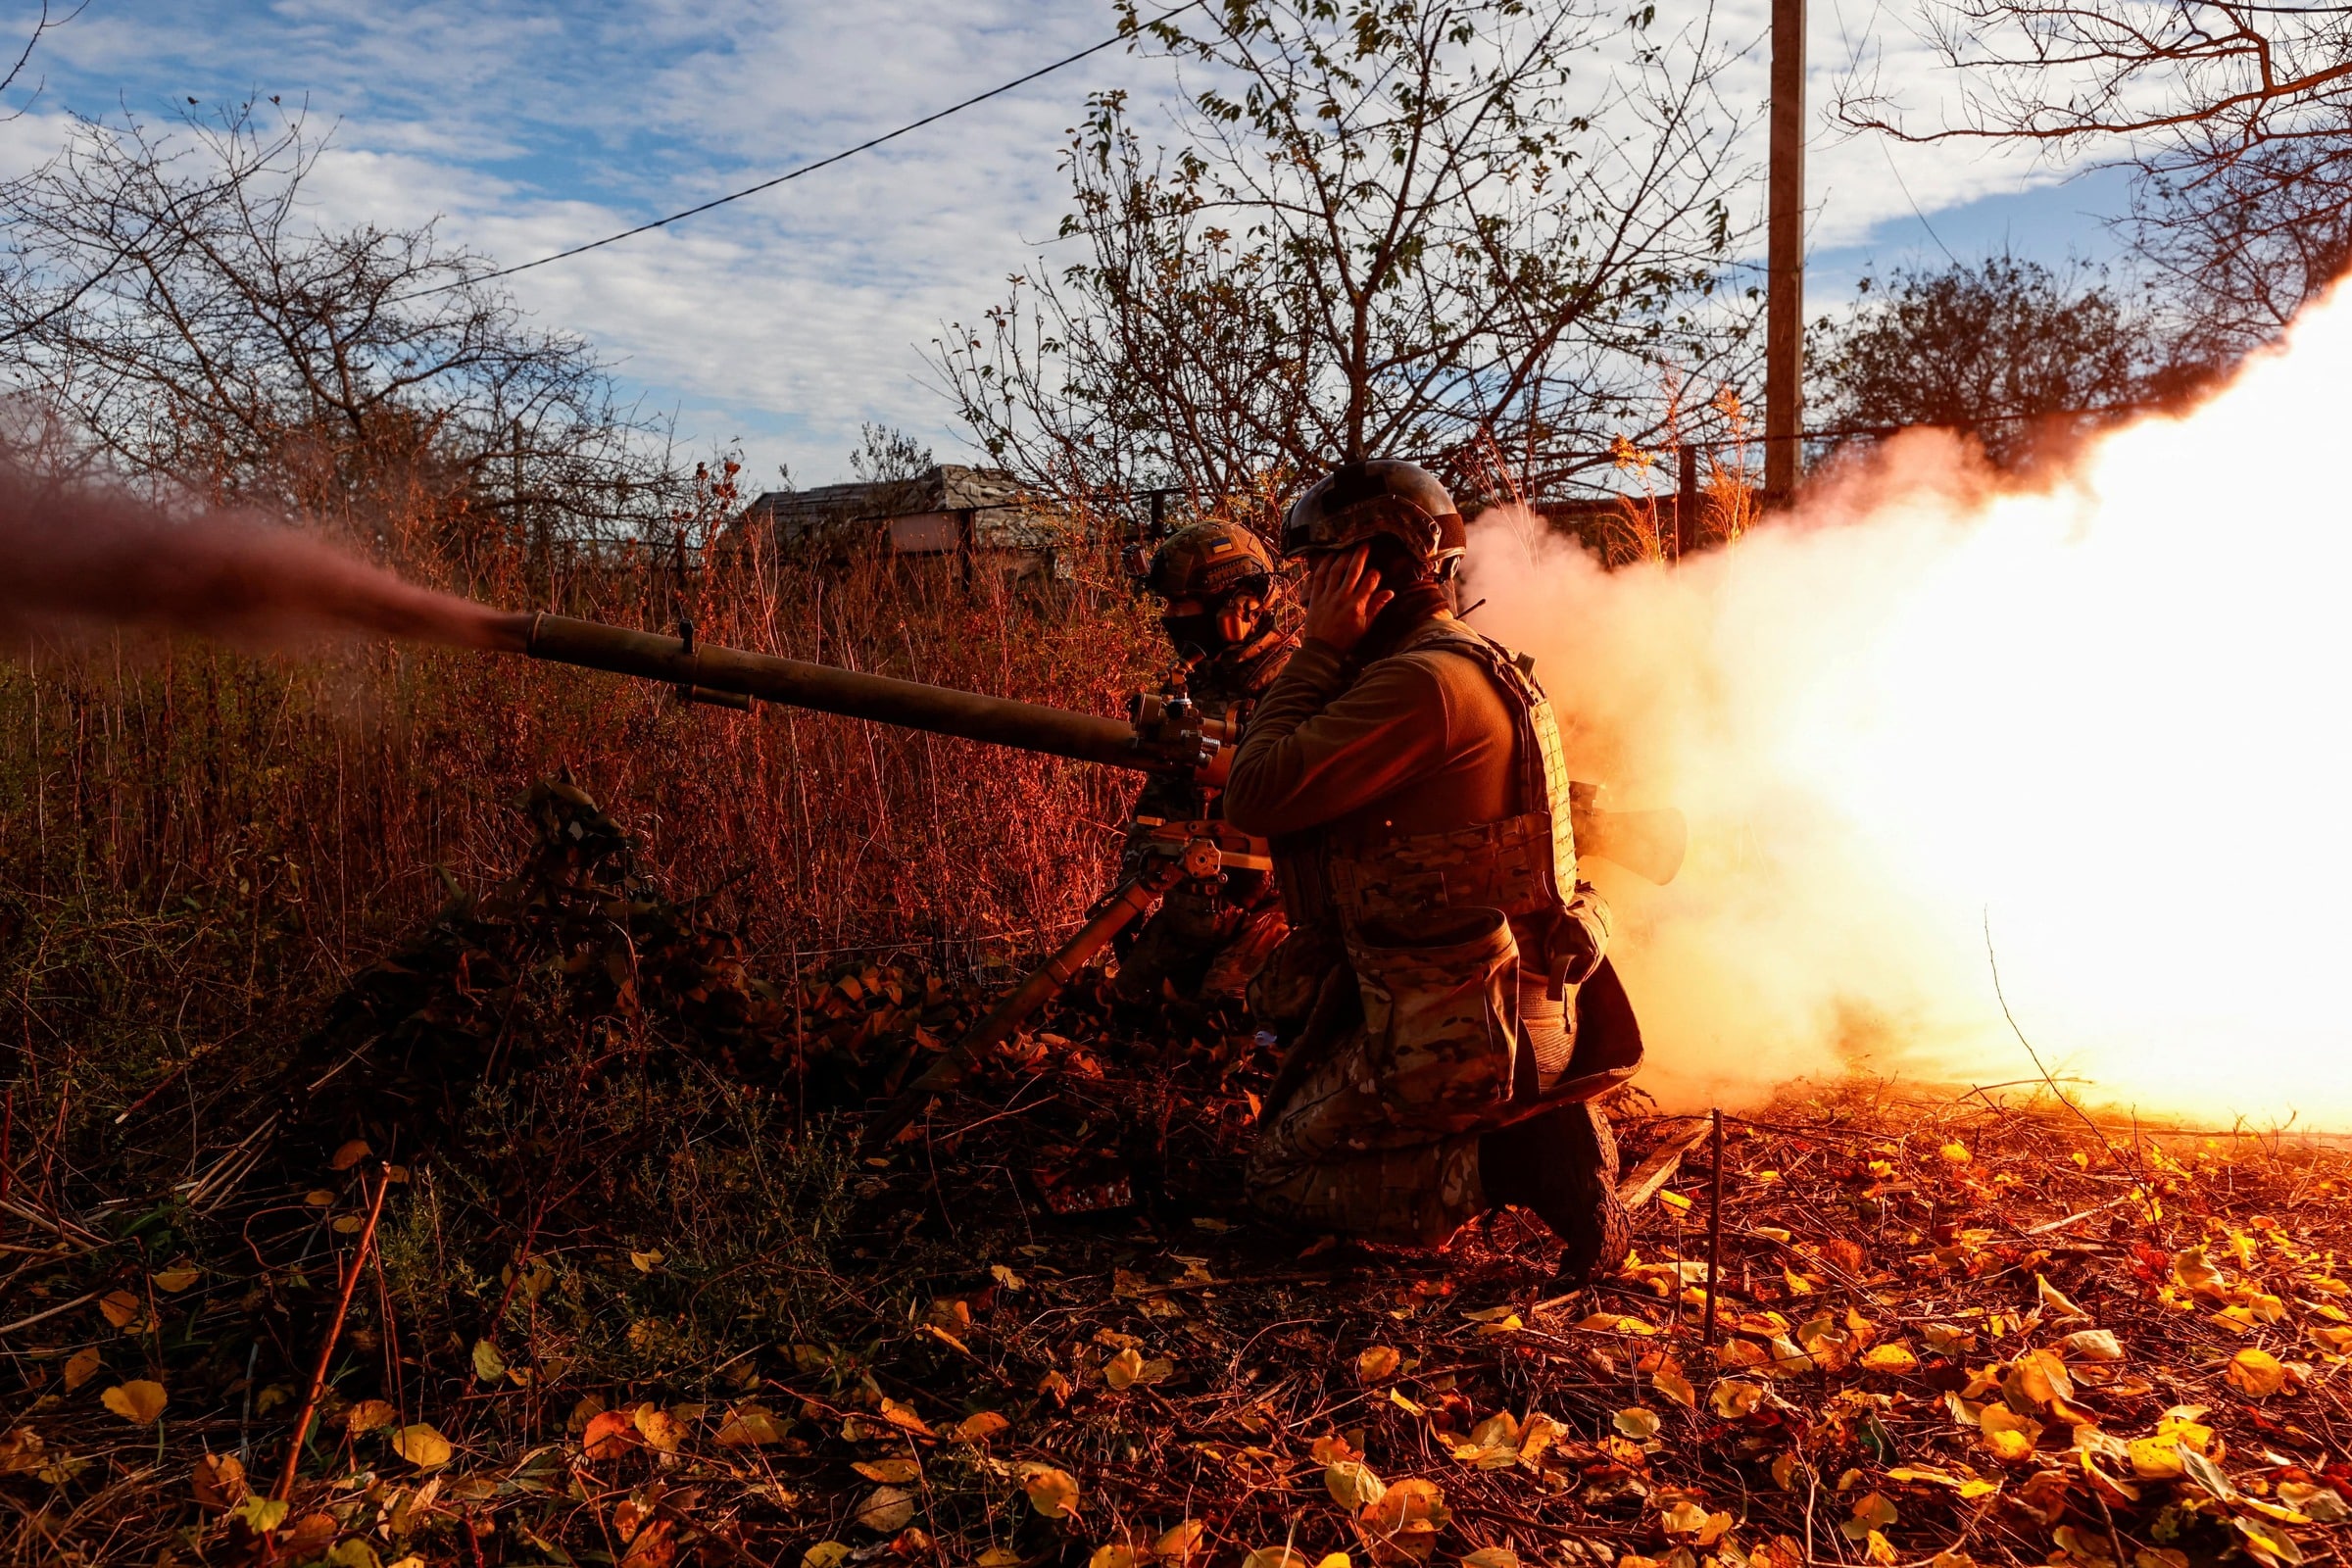 弹药短缺俄军围困在即  乌军撤出阿夫迪夫卡